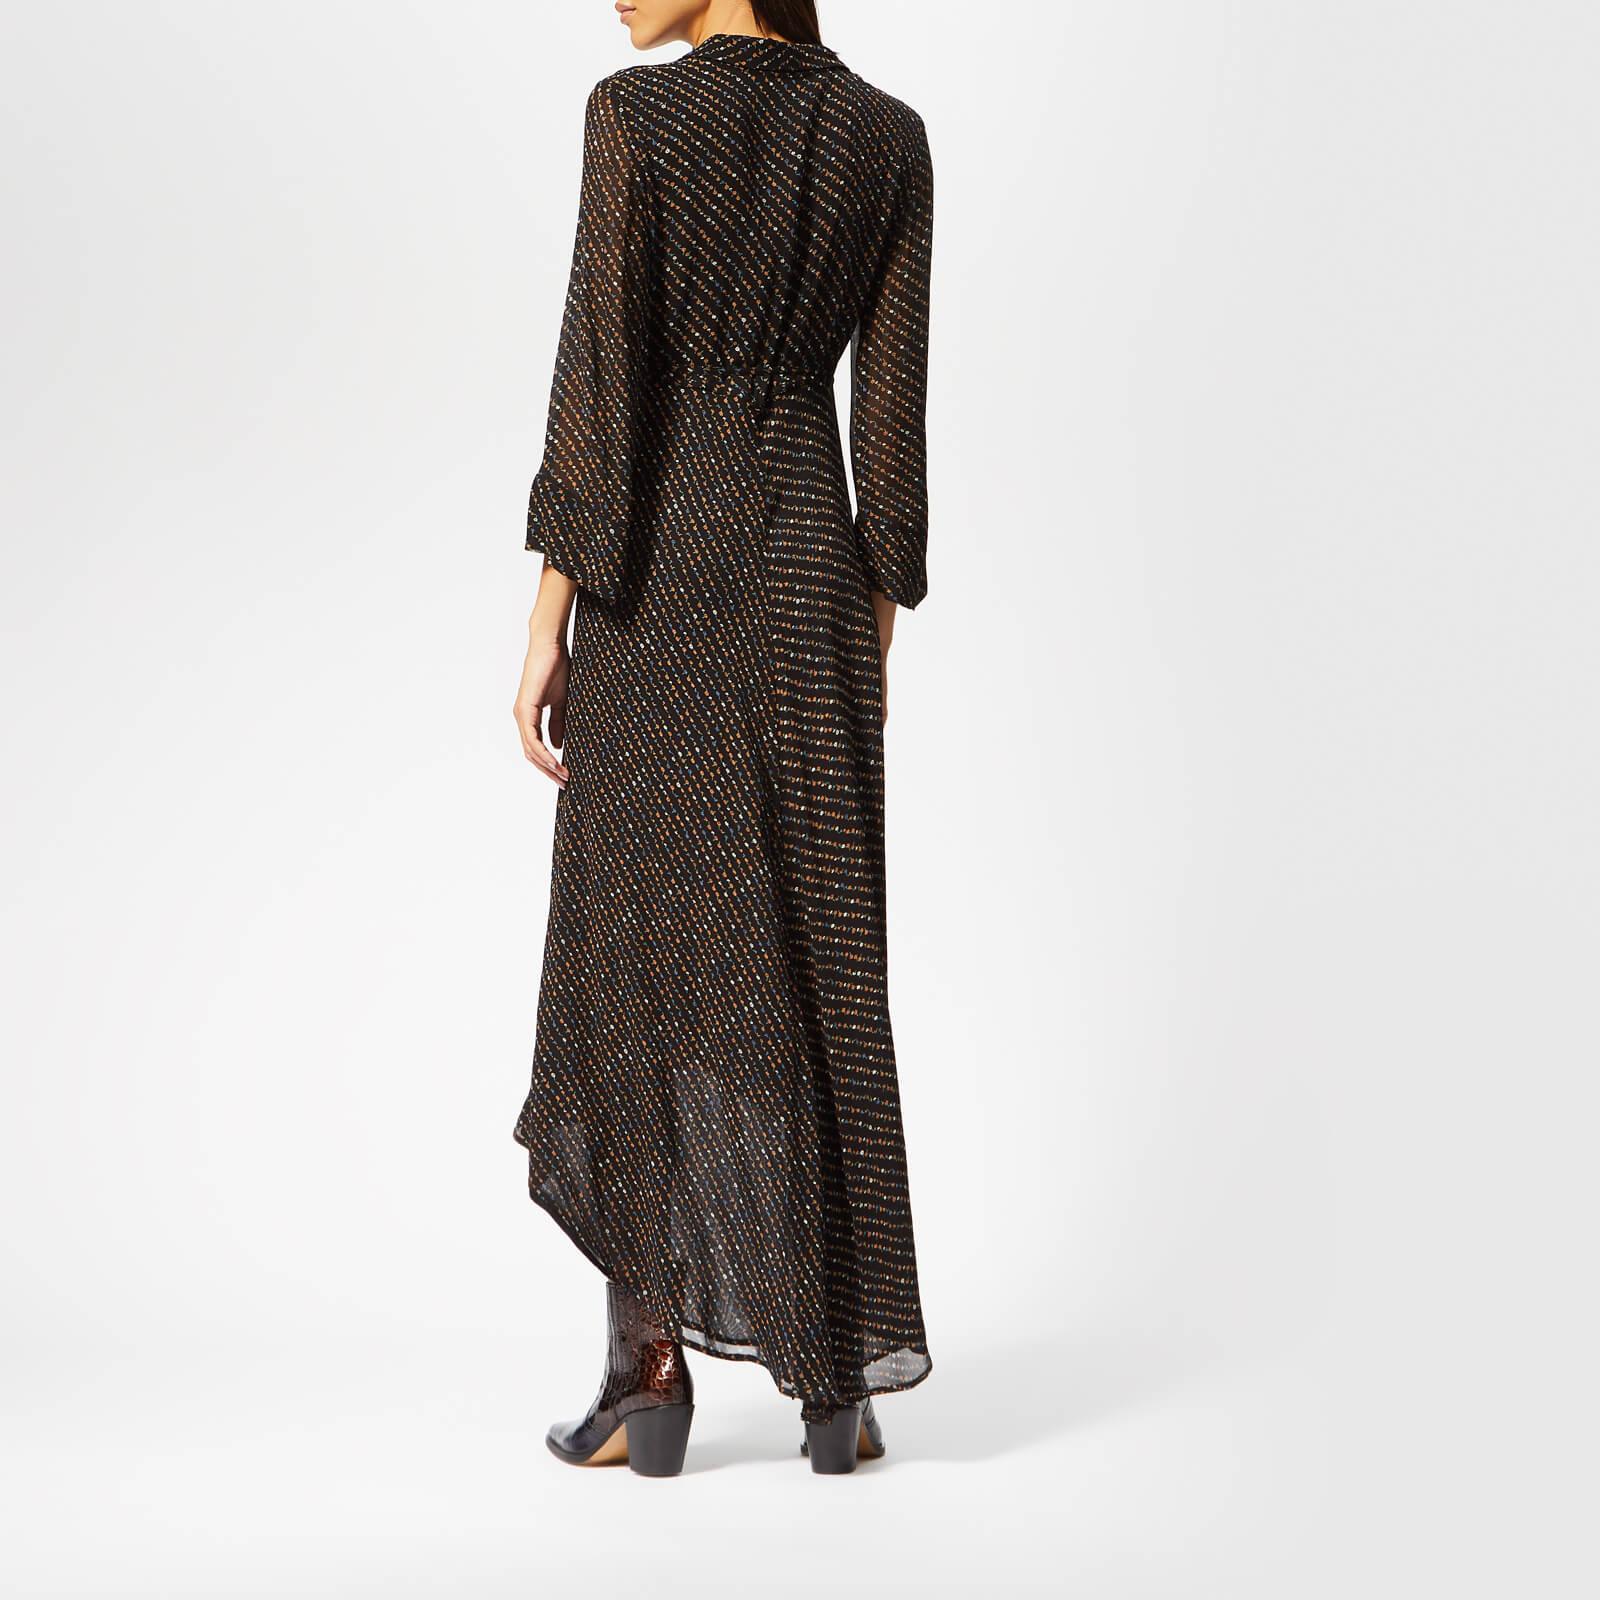 Ganni Synthetic Mullin Georgette Wrap Dress in Black - Lyst